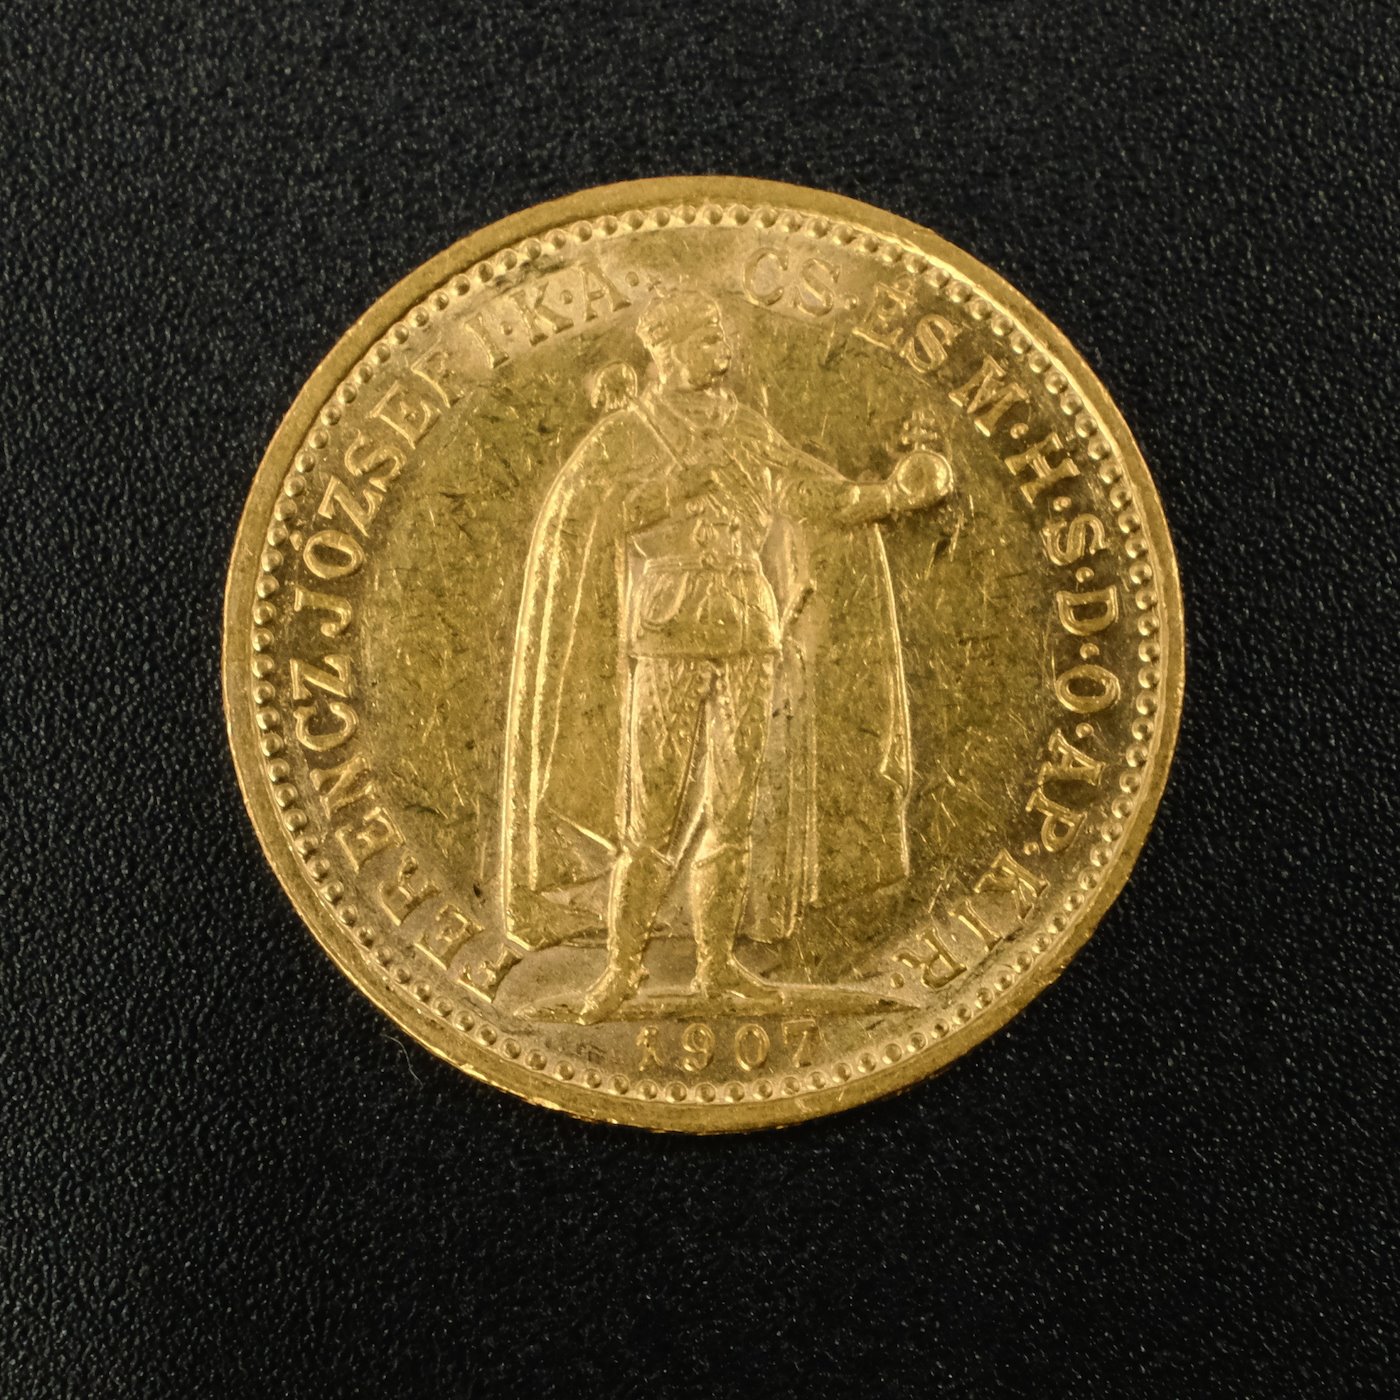 Mince - Rakousko Uhersko zlatá 10 Koruna 1907 K.B. uherská, zlato 900/1000, hrubá hmotnost mince 3,387g